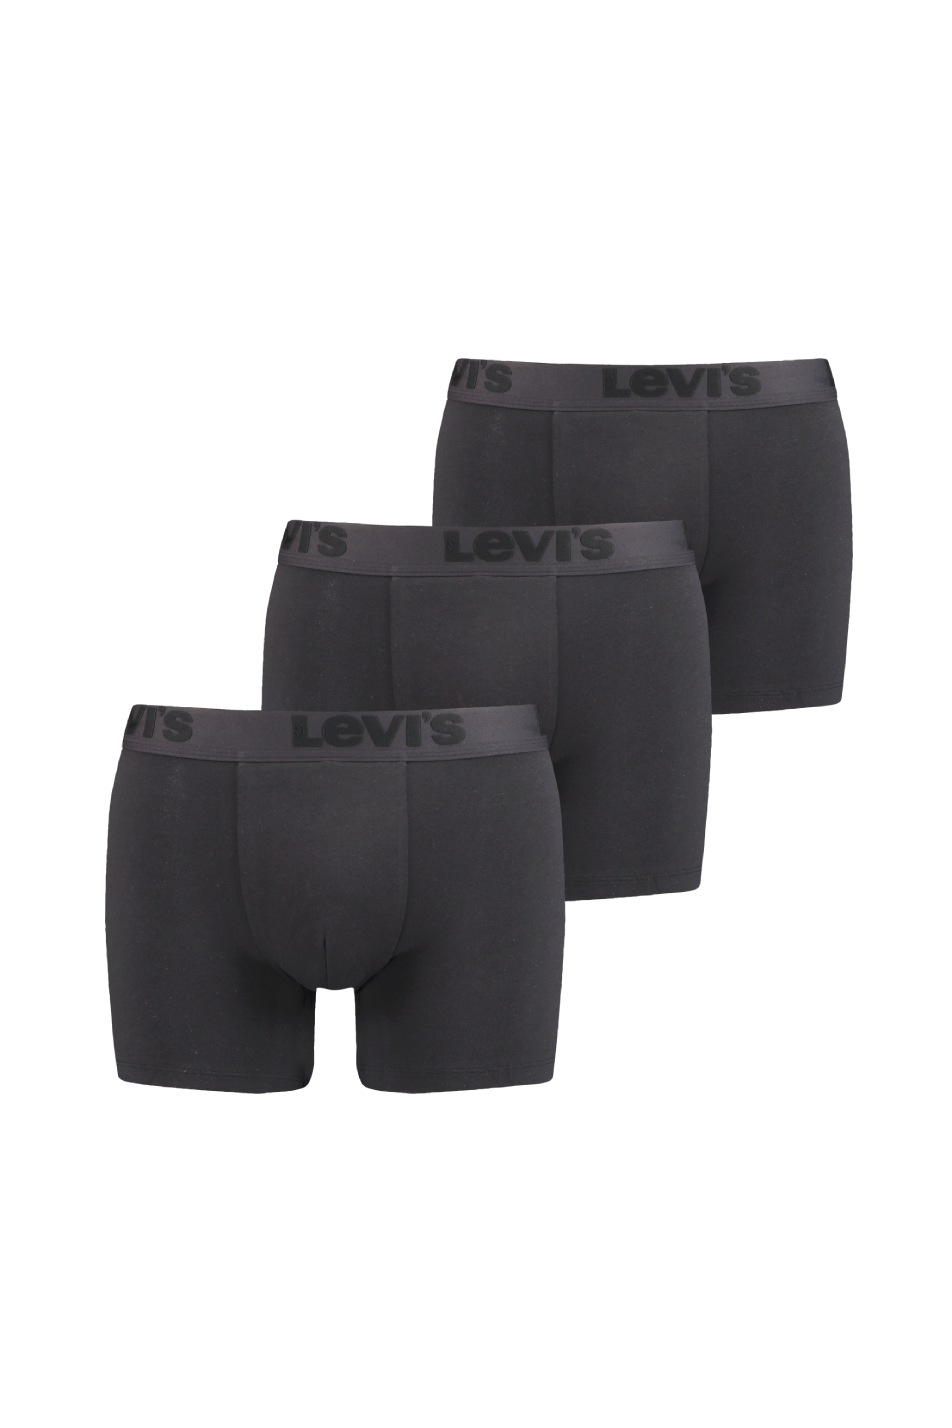 Levi's Men's 3 Pack Premium Boxer Brief